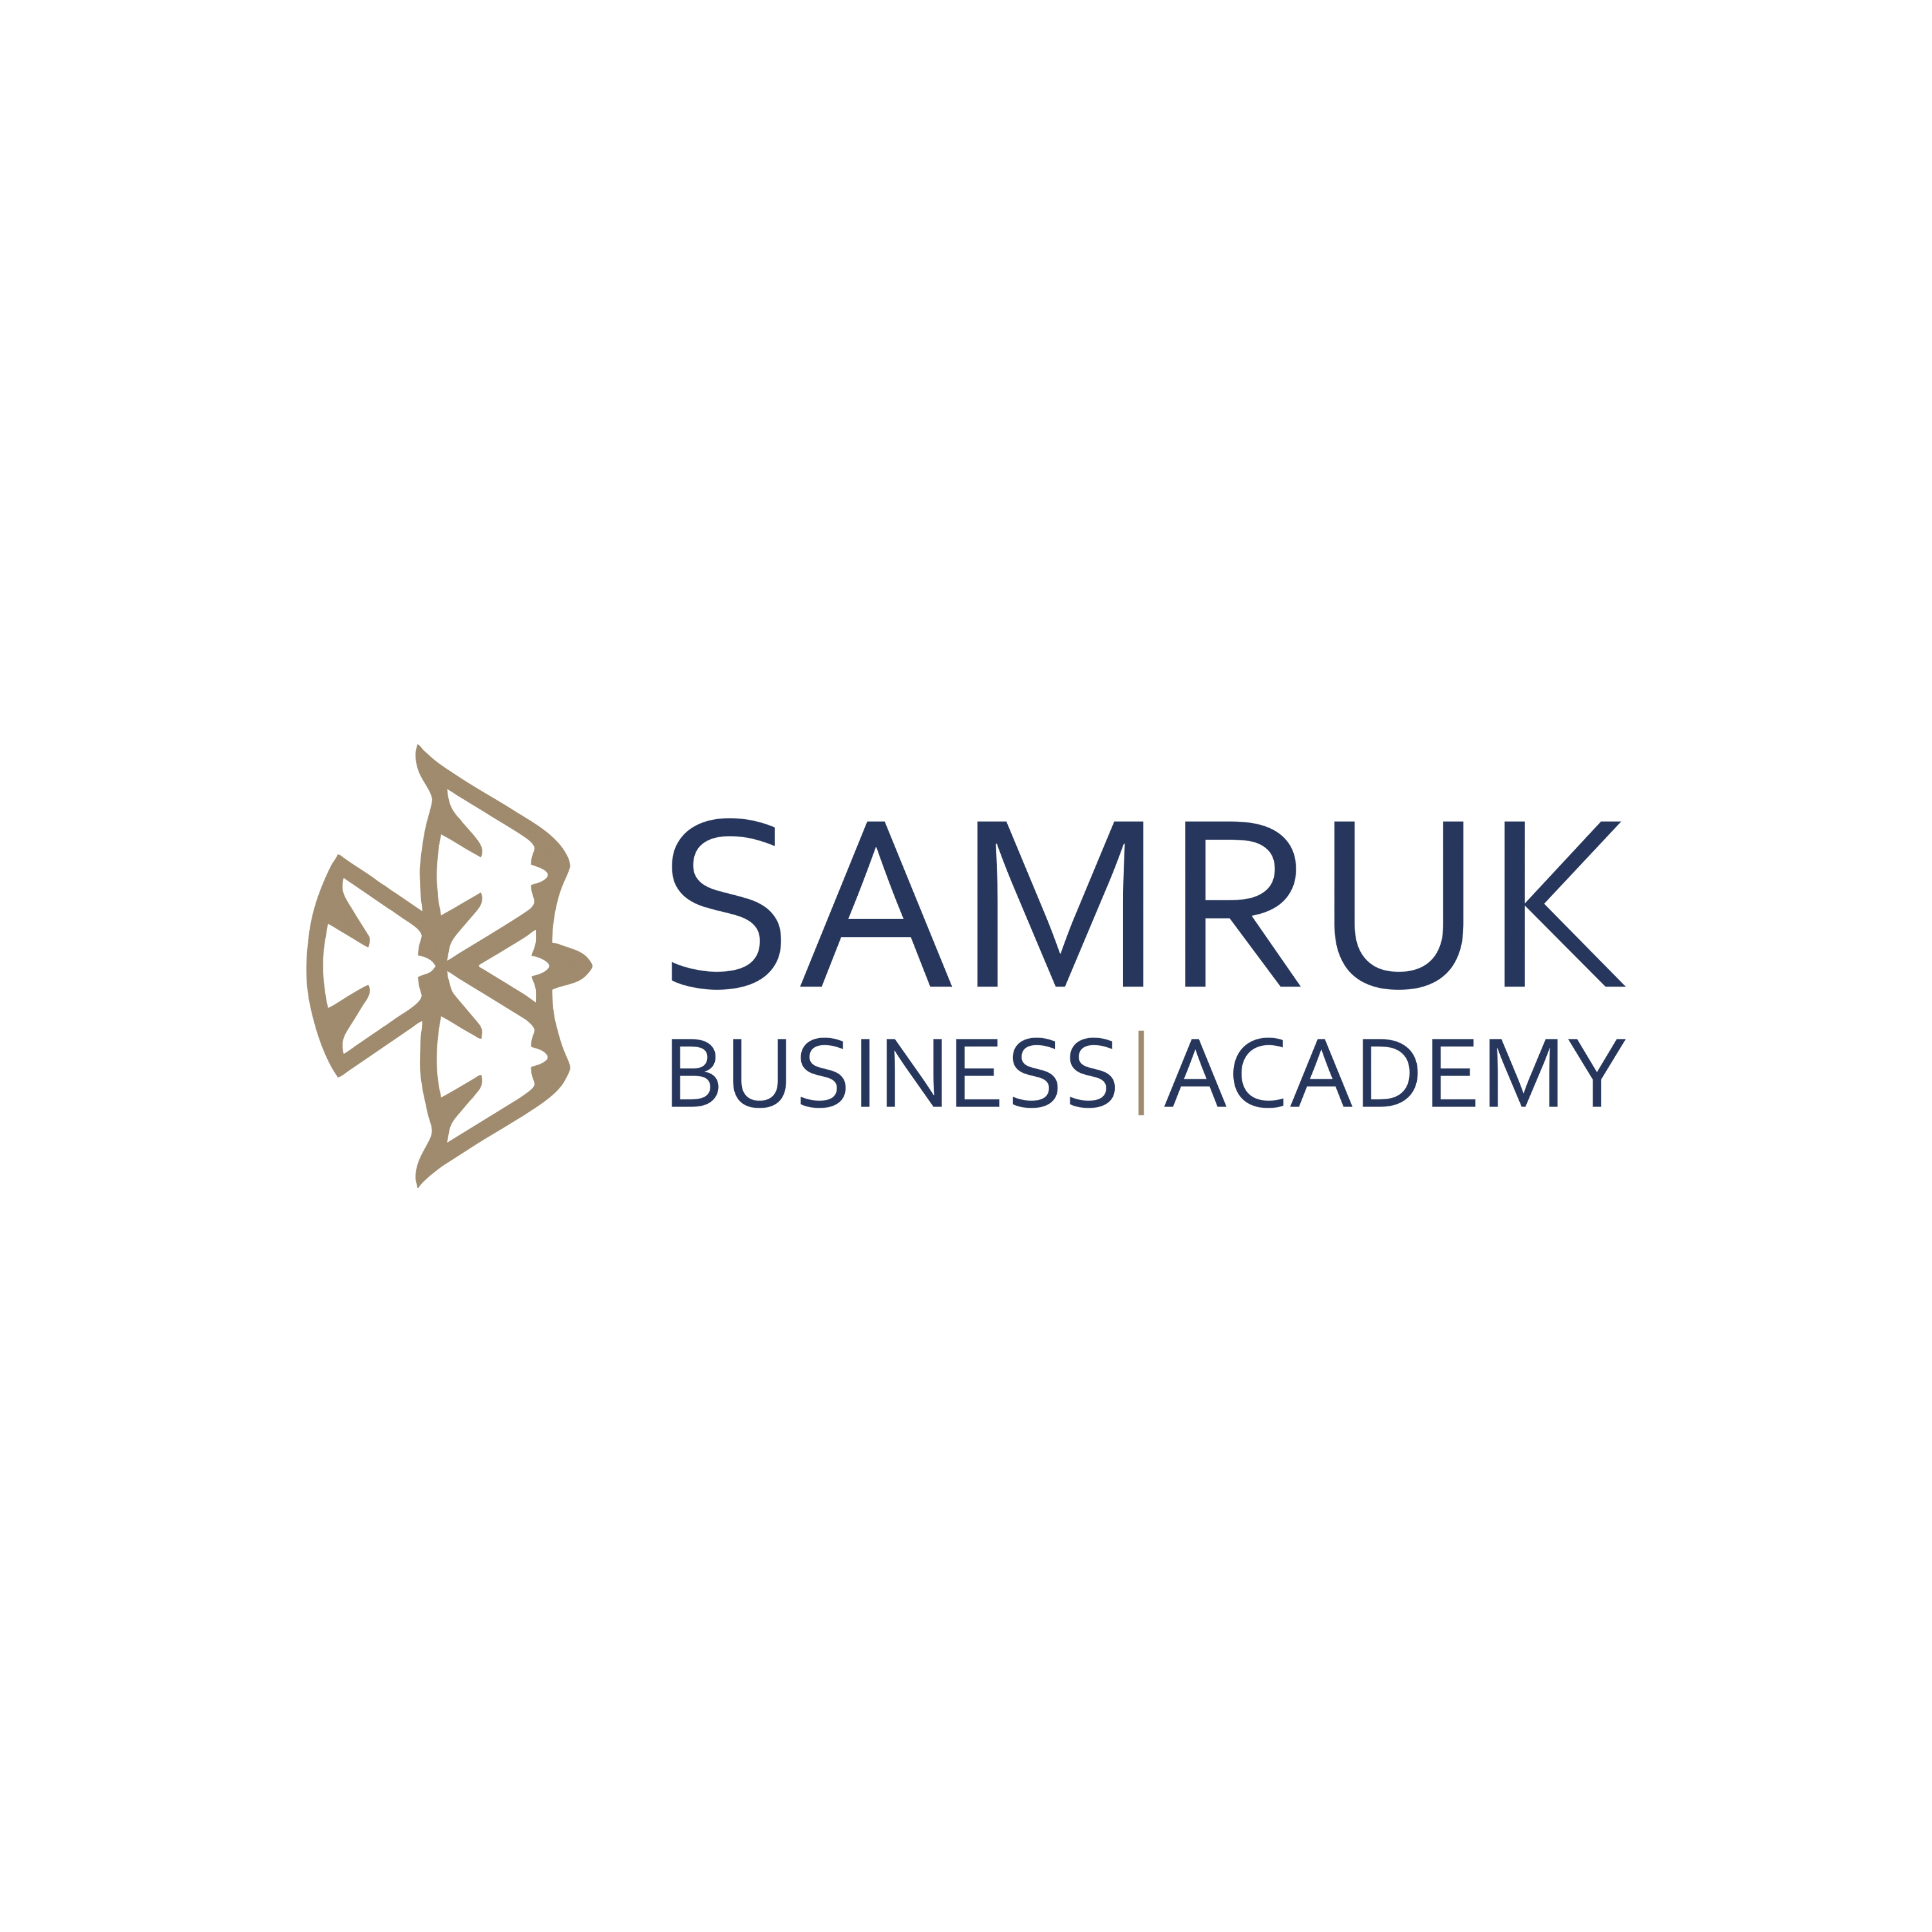 Samruk Business Academy. Новое видение Корпоративного университета «Самрук-Казына».